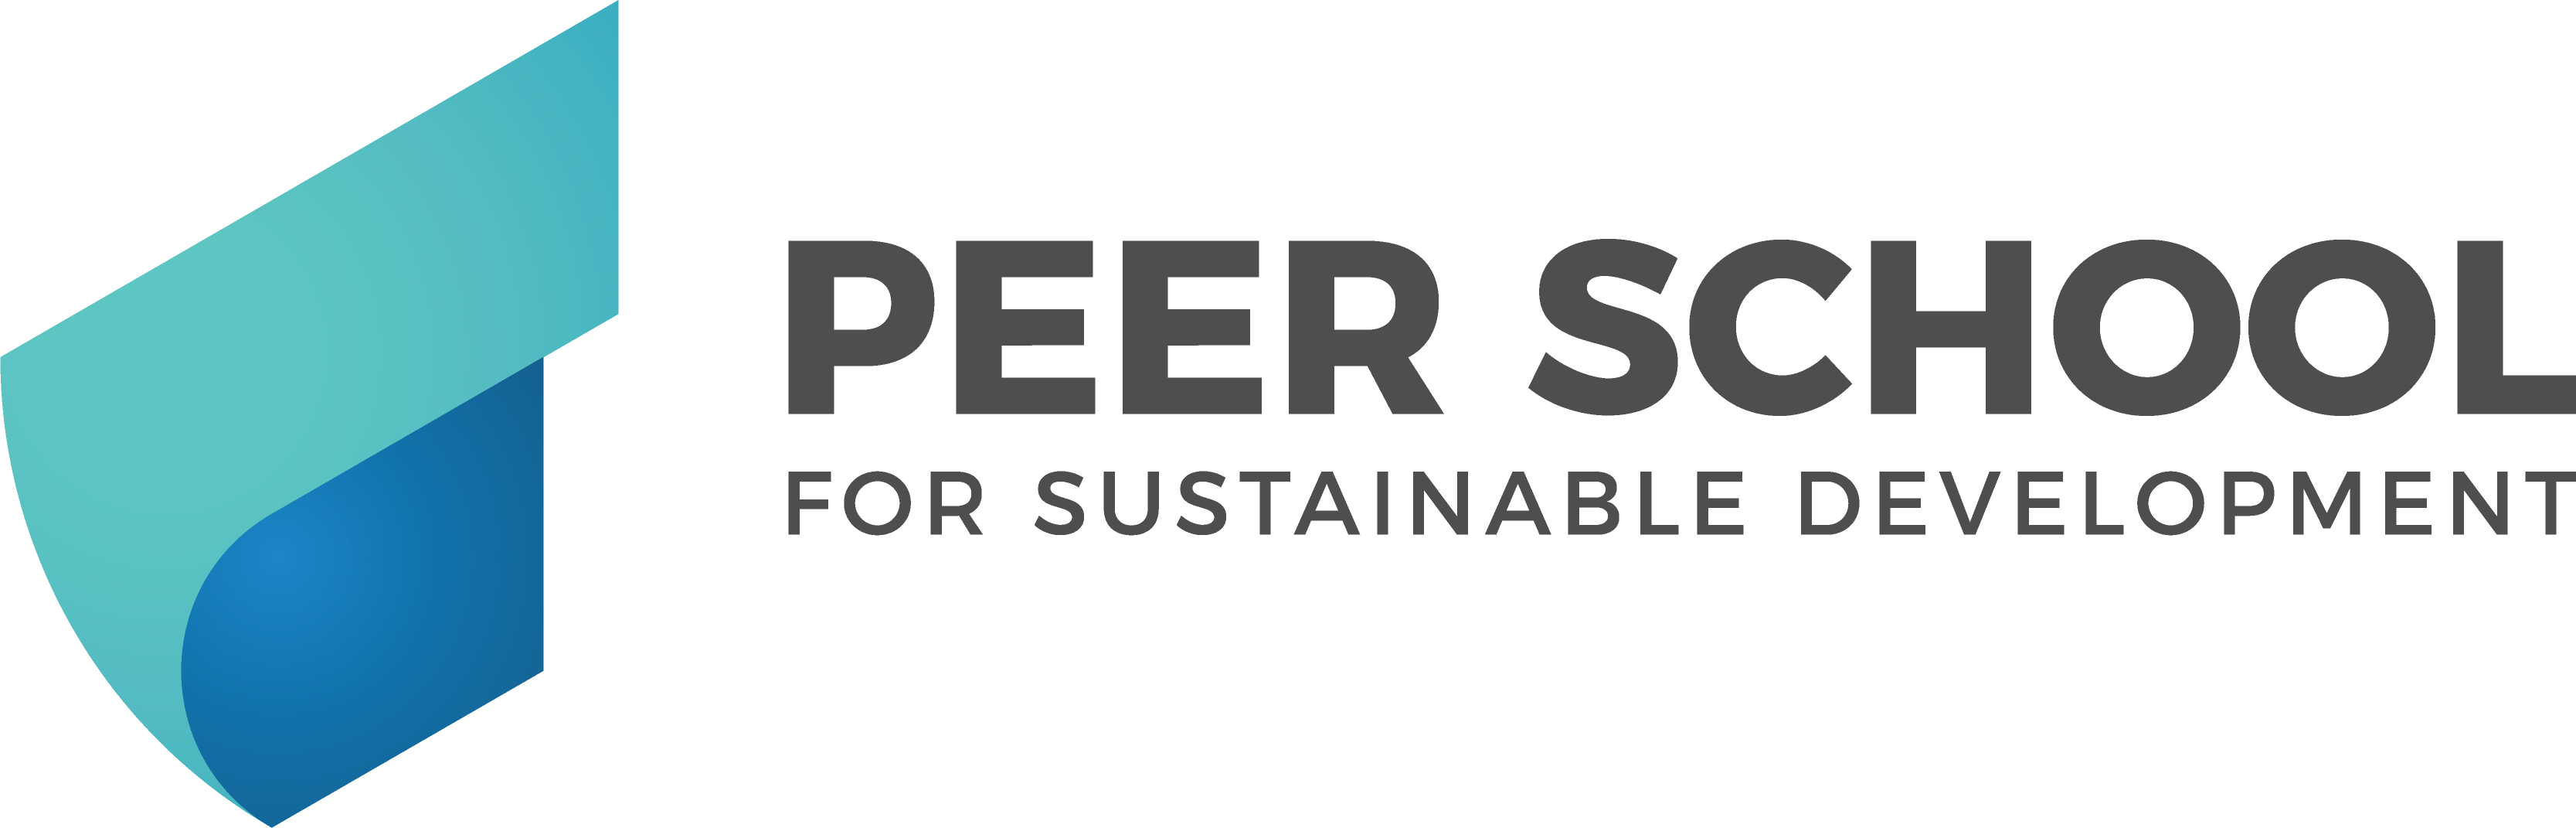 Peer School for Sustainable Development e.V.